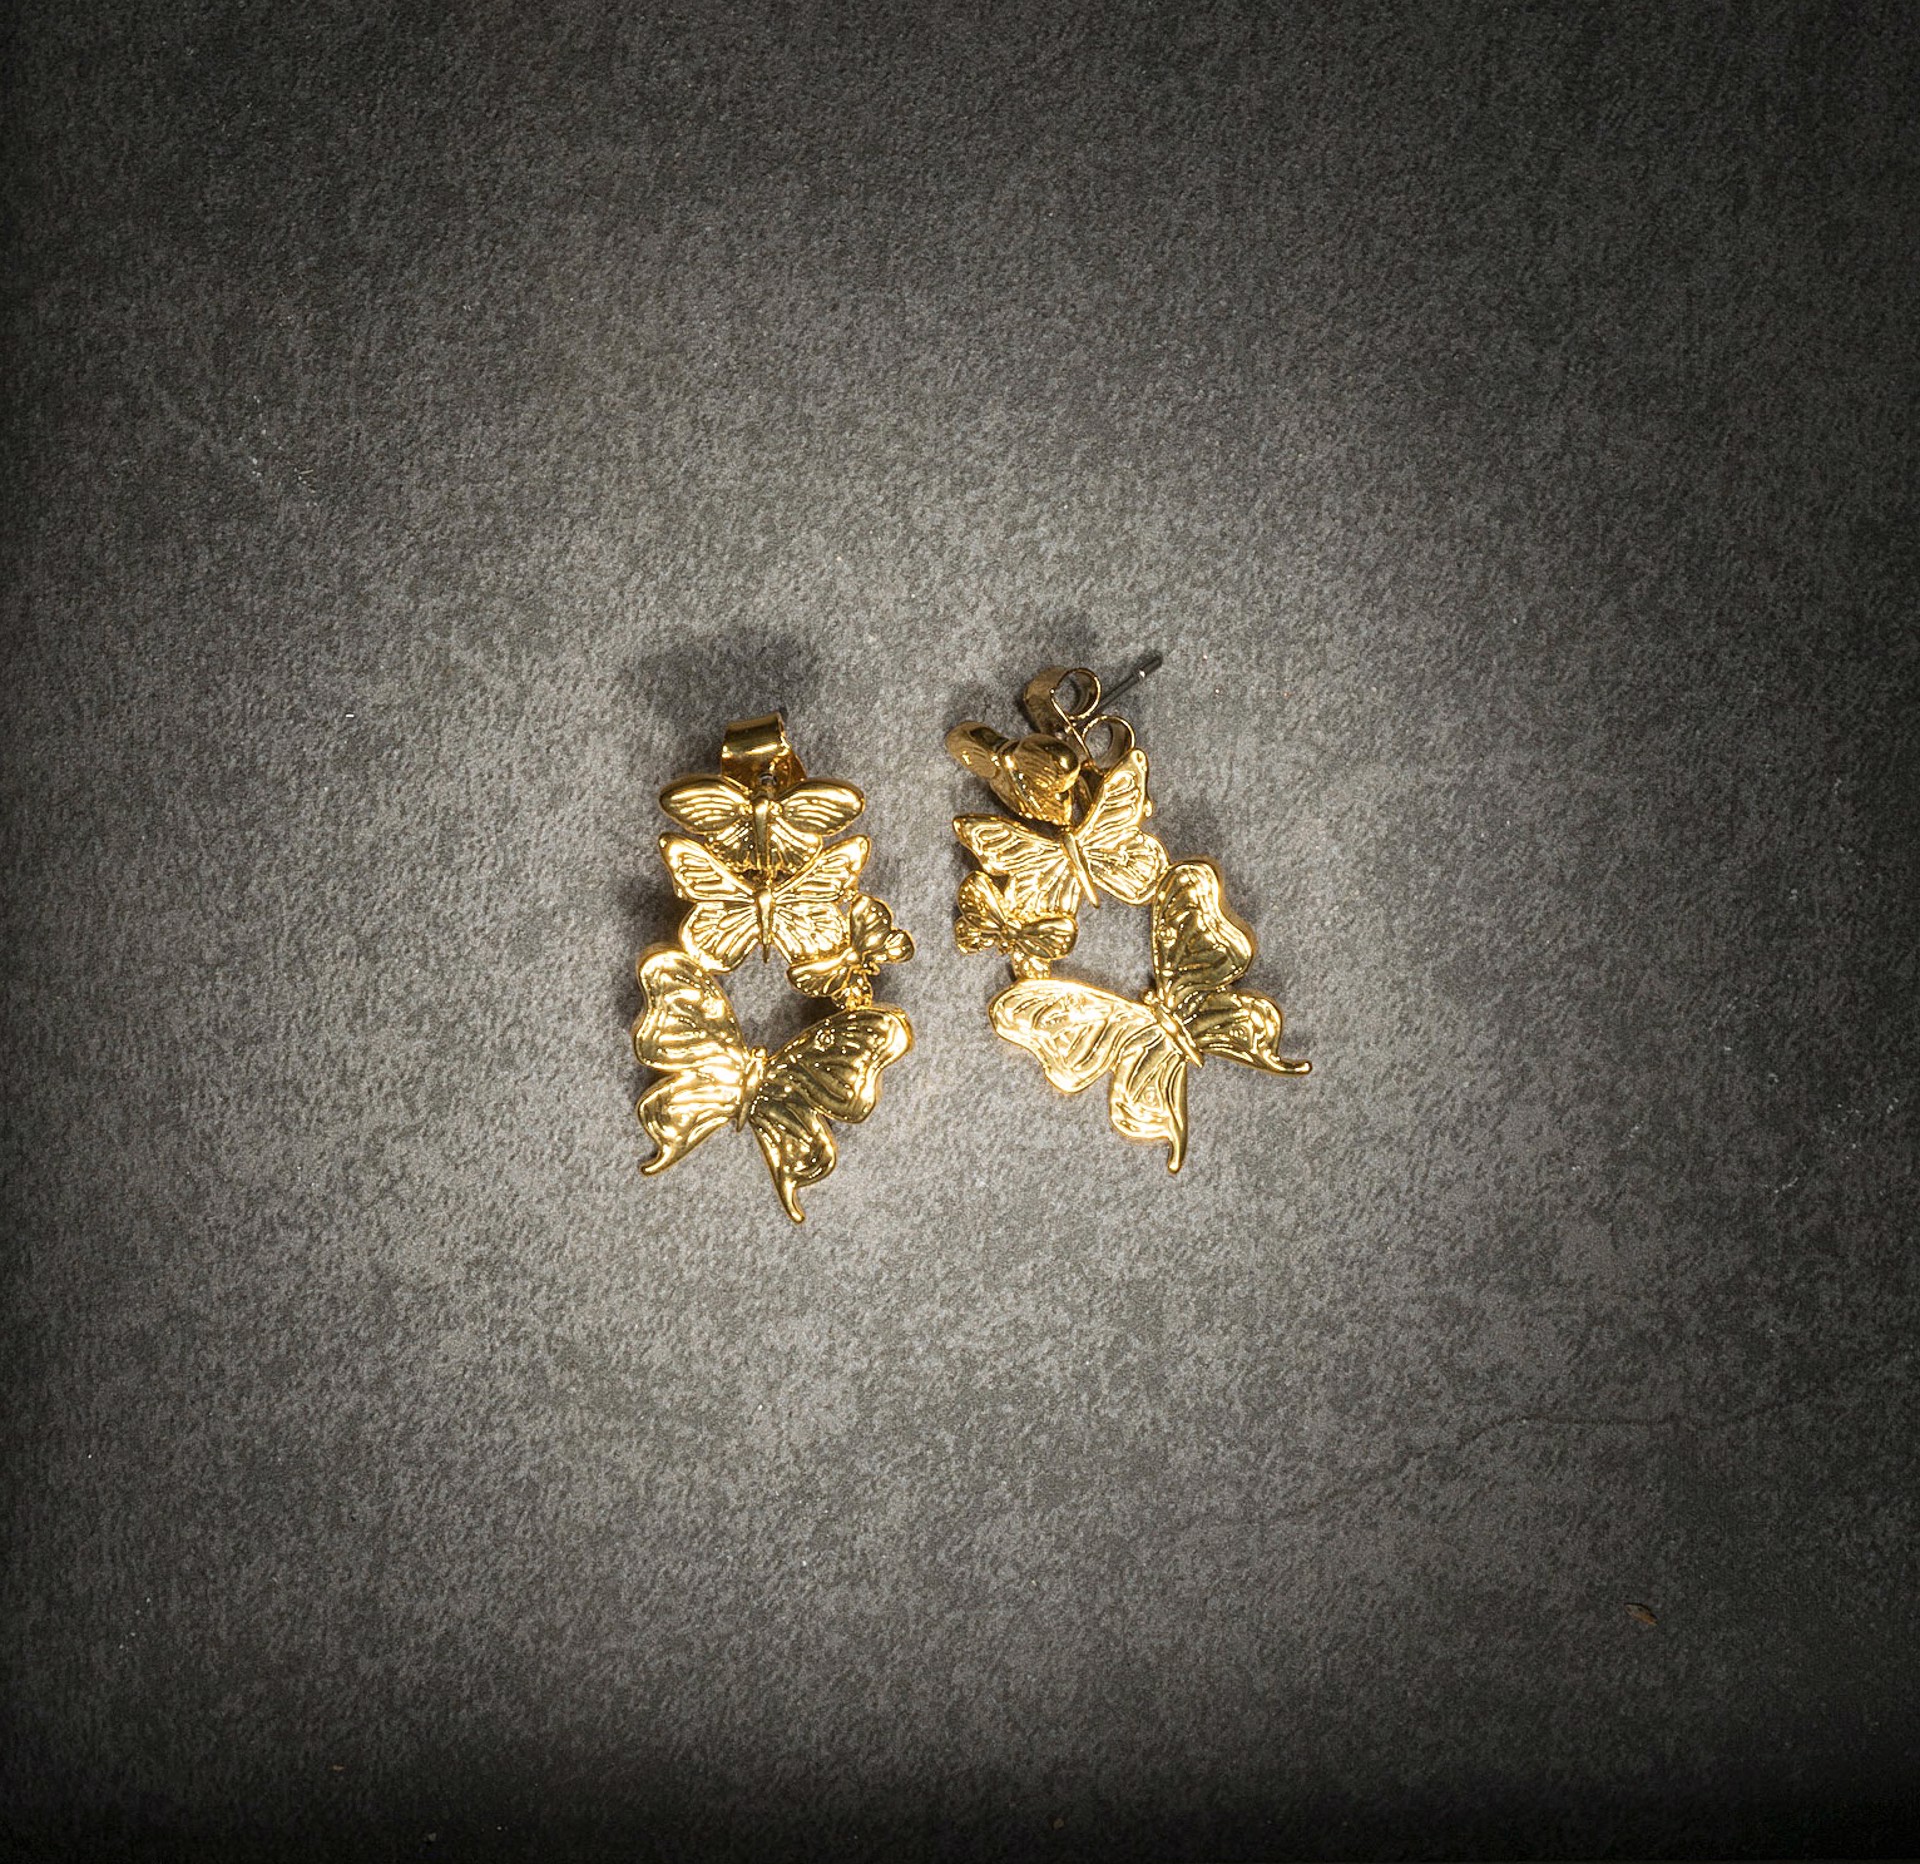 Butterfly Breeze Earrings - Gold Plate by Angela Mia